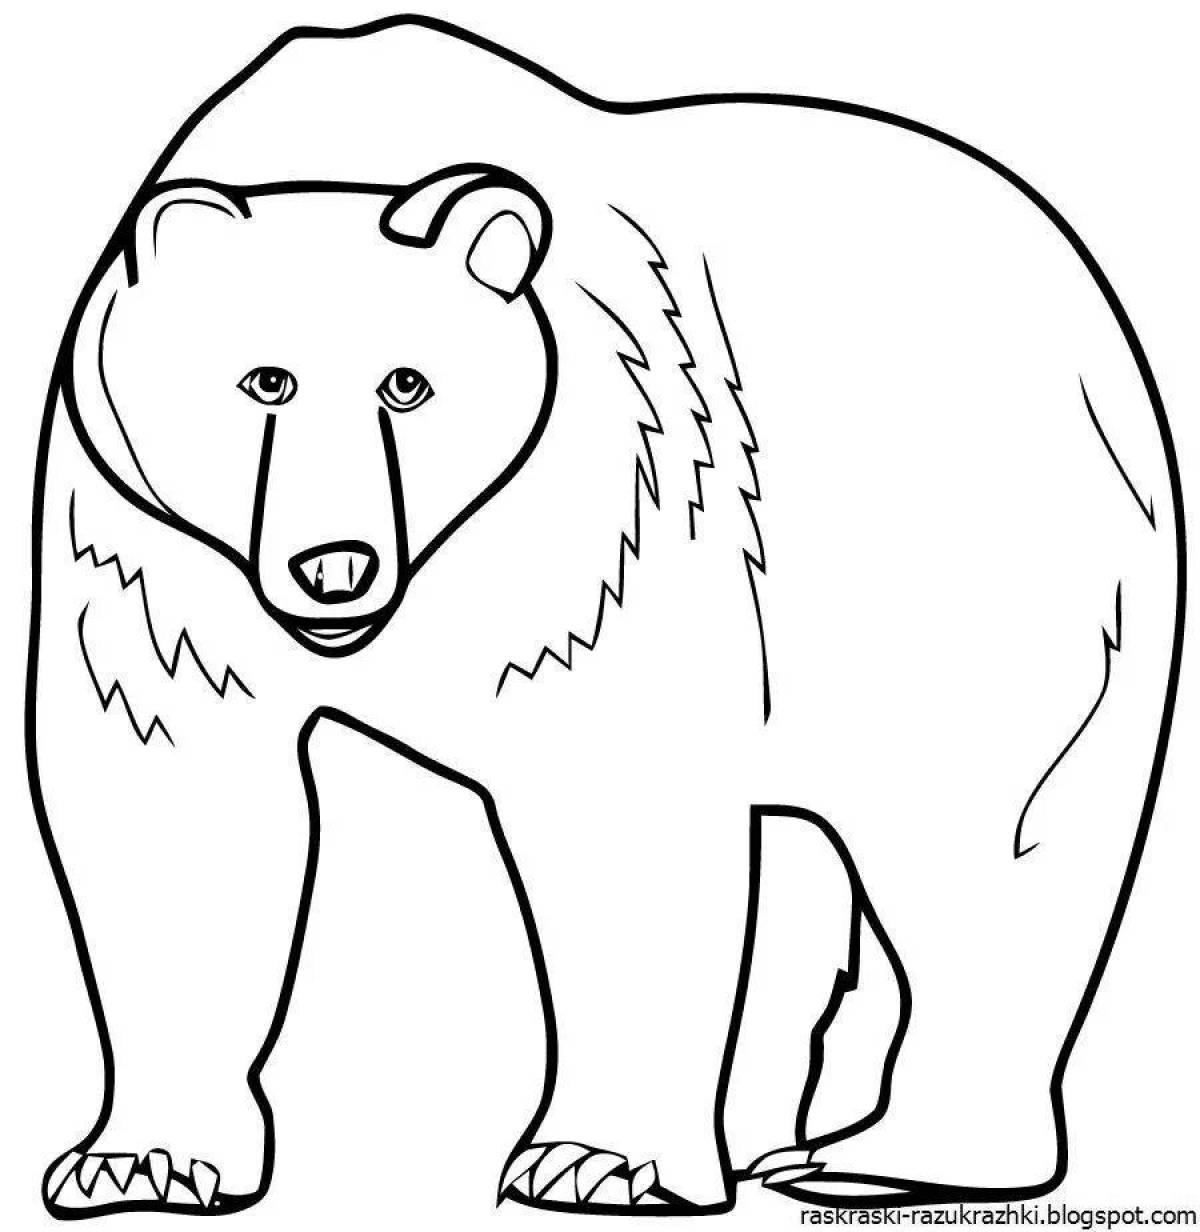 Великолепная раскраска белого медведя для детей 6-7 лет